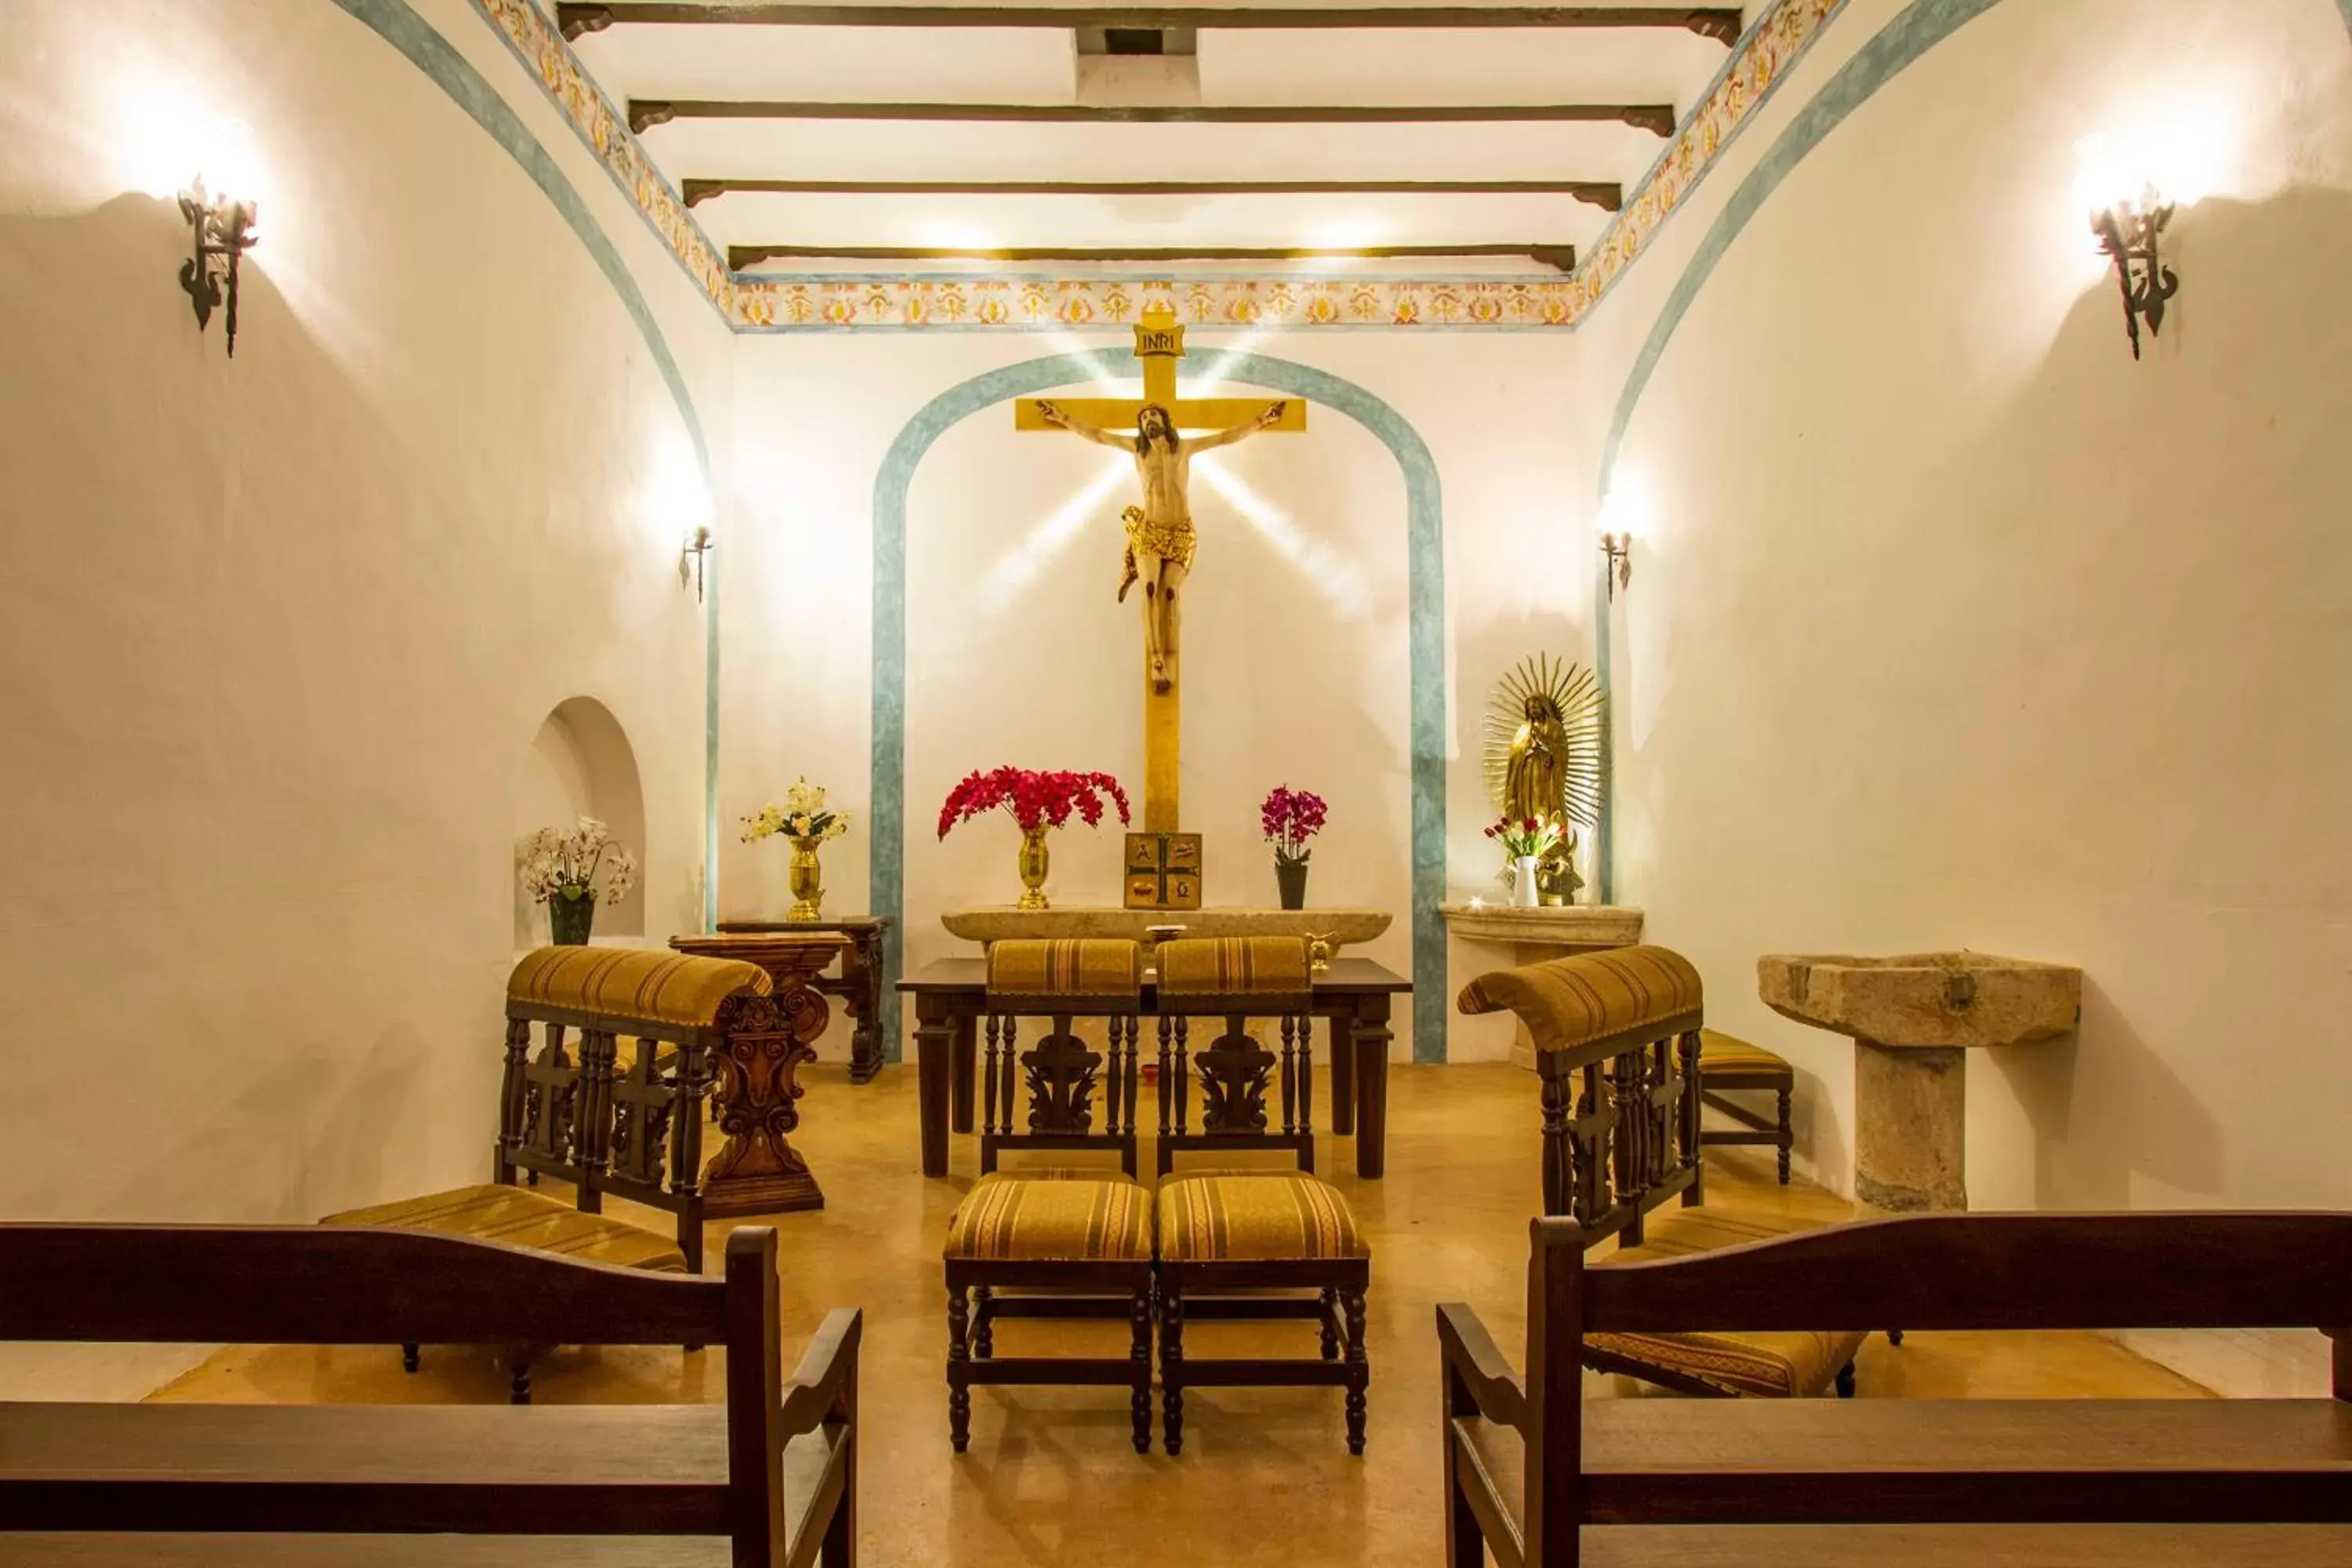 Banquet/Function facilities, Restaurant/Places to Eat in Hacienda Santa Cruz Merida